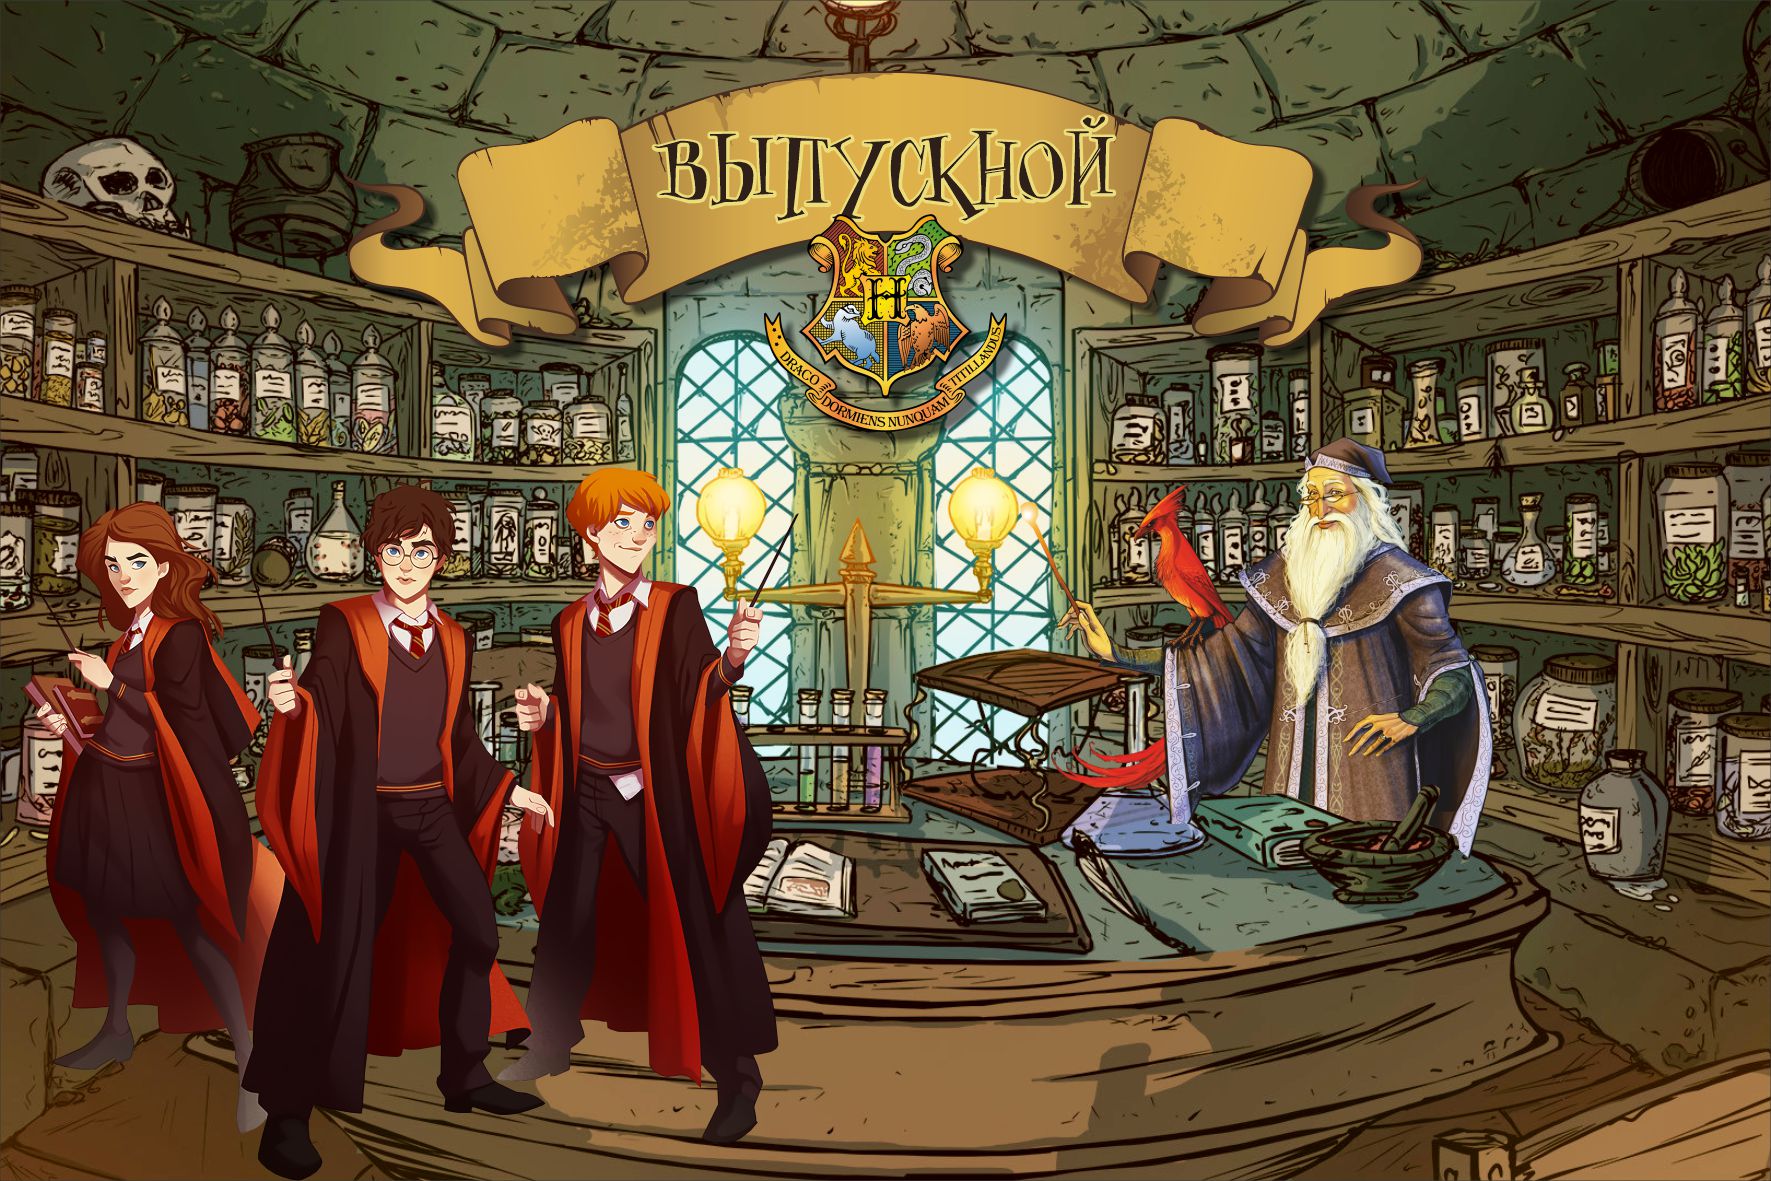 Баннер с Гарри Поттером, Гермионой и Роном